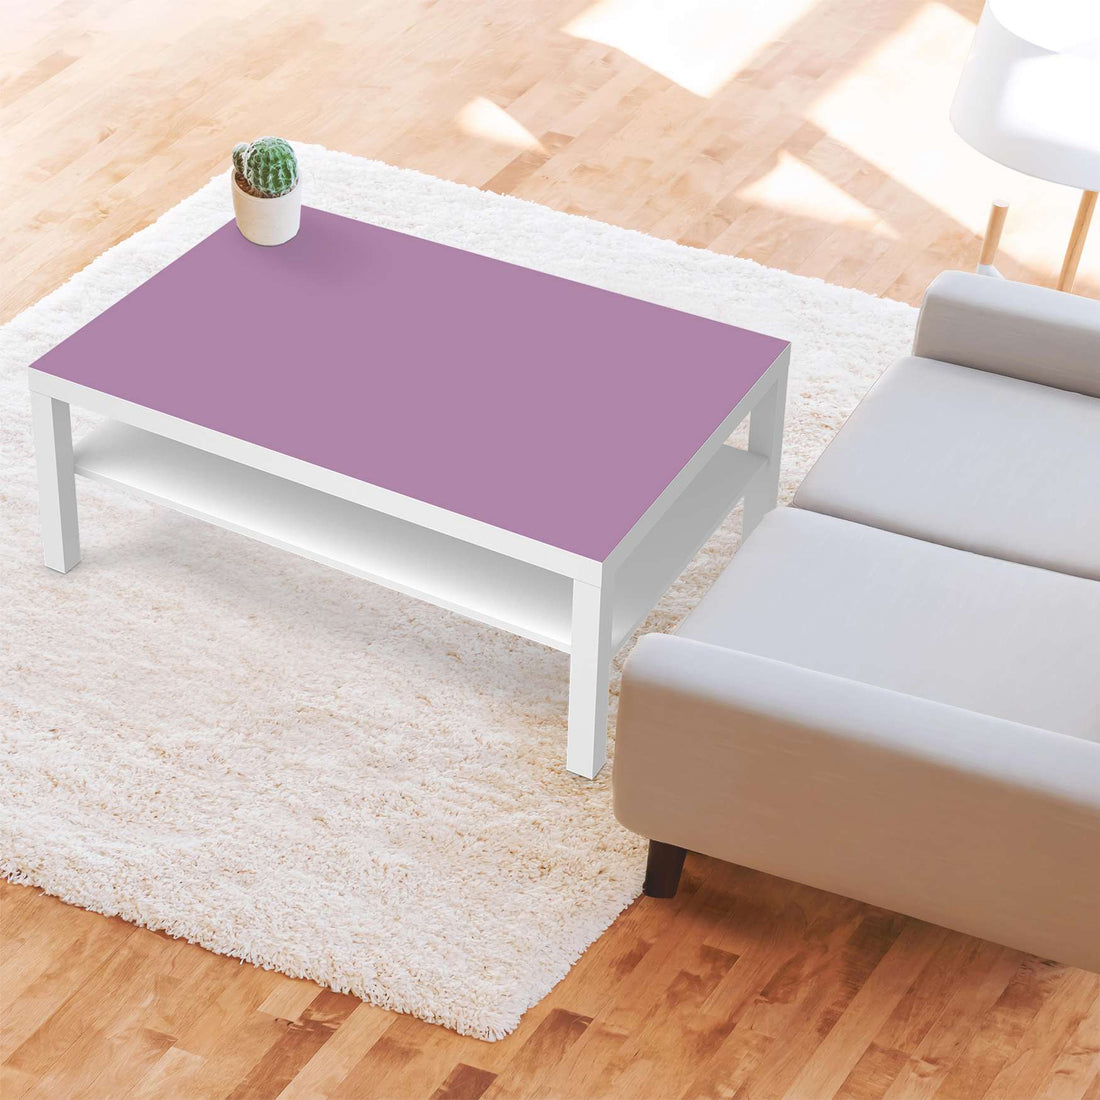 Klebefolie Flieder Light - IKEA Lack Tisch 118x78 cm - Wohnzimmer